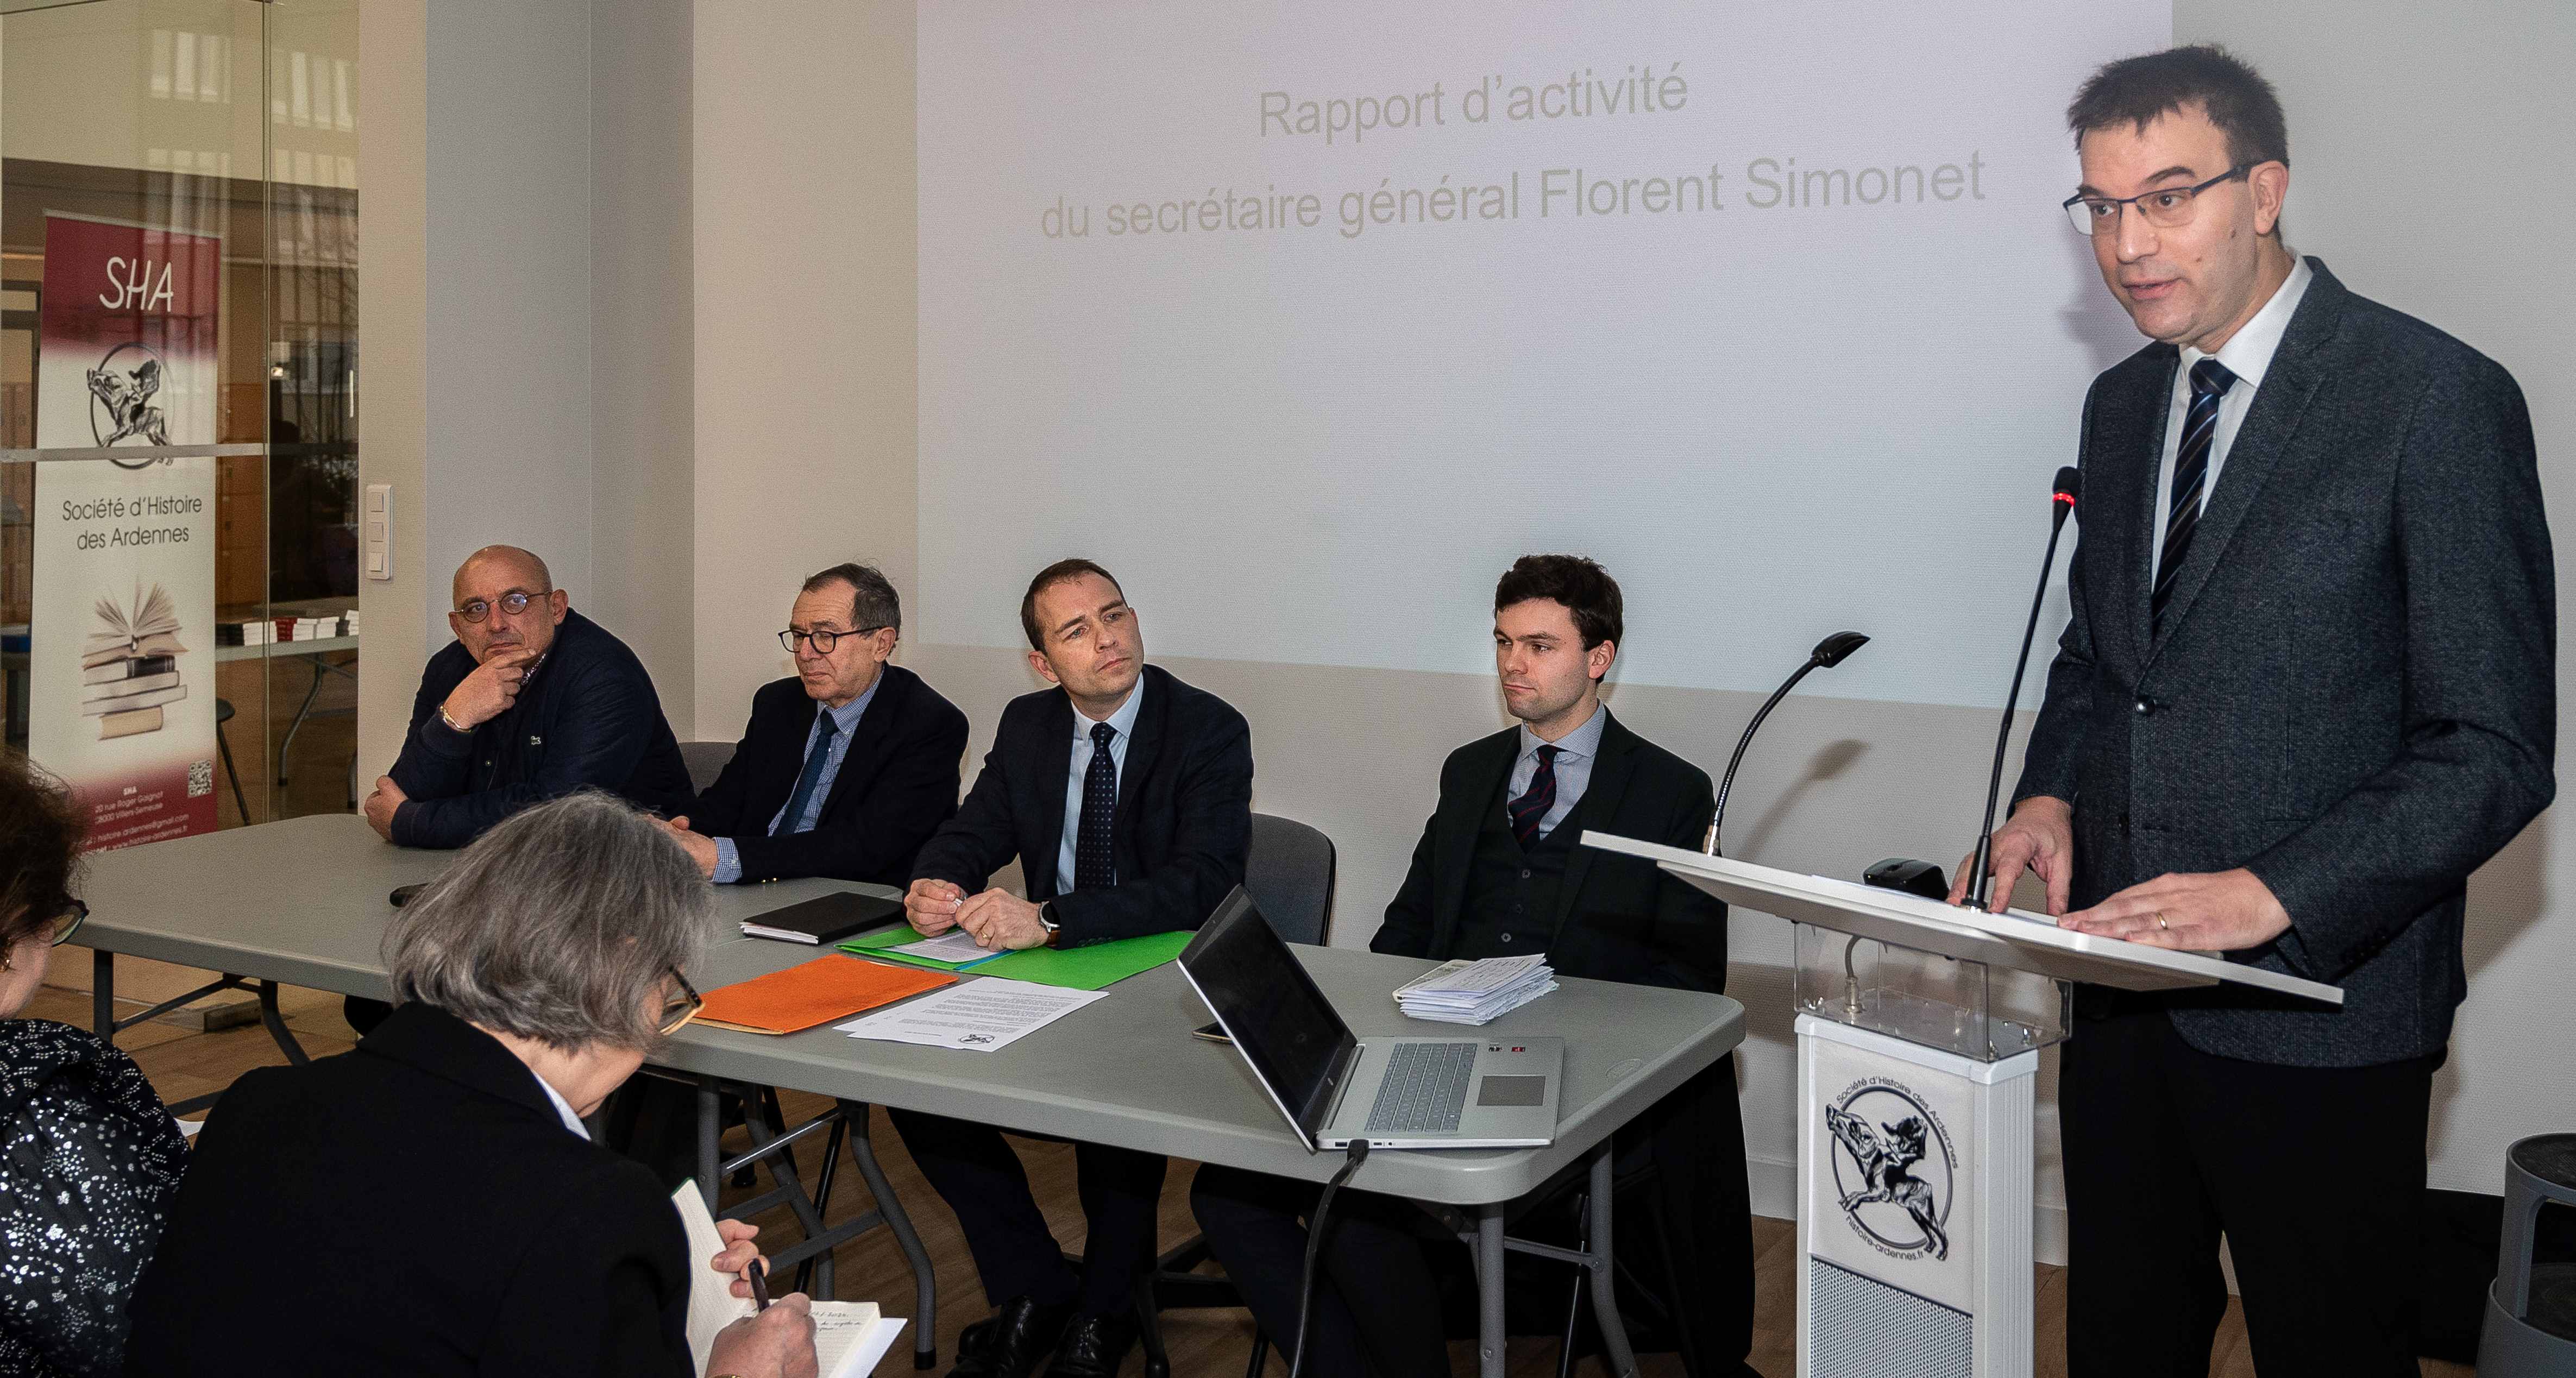 09 rapport dactivité du secrétaire général Florent Simonet